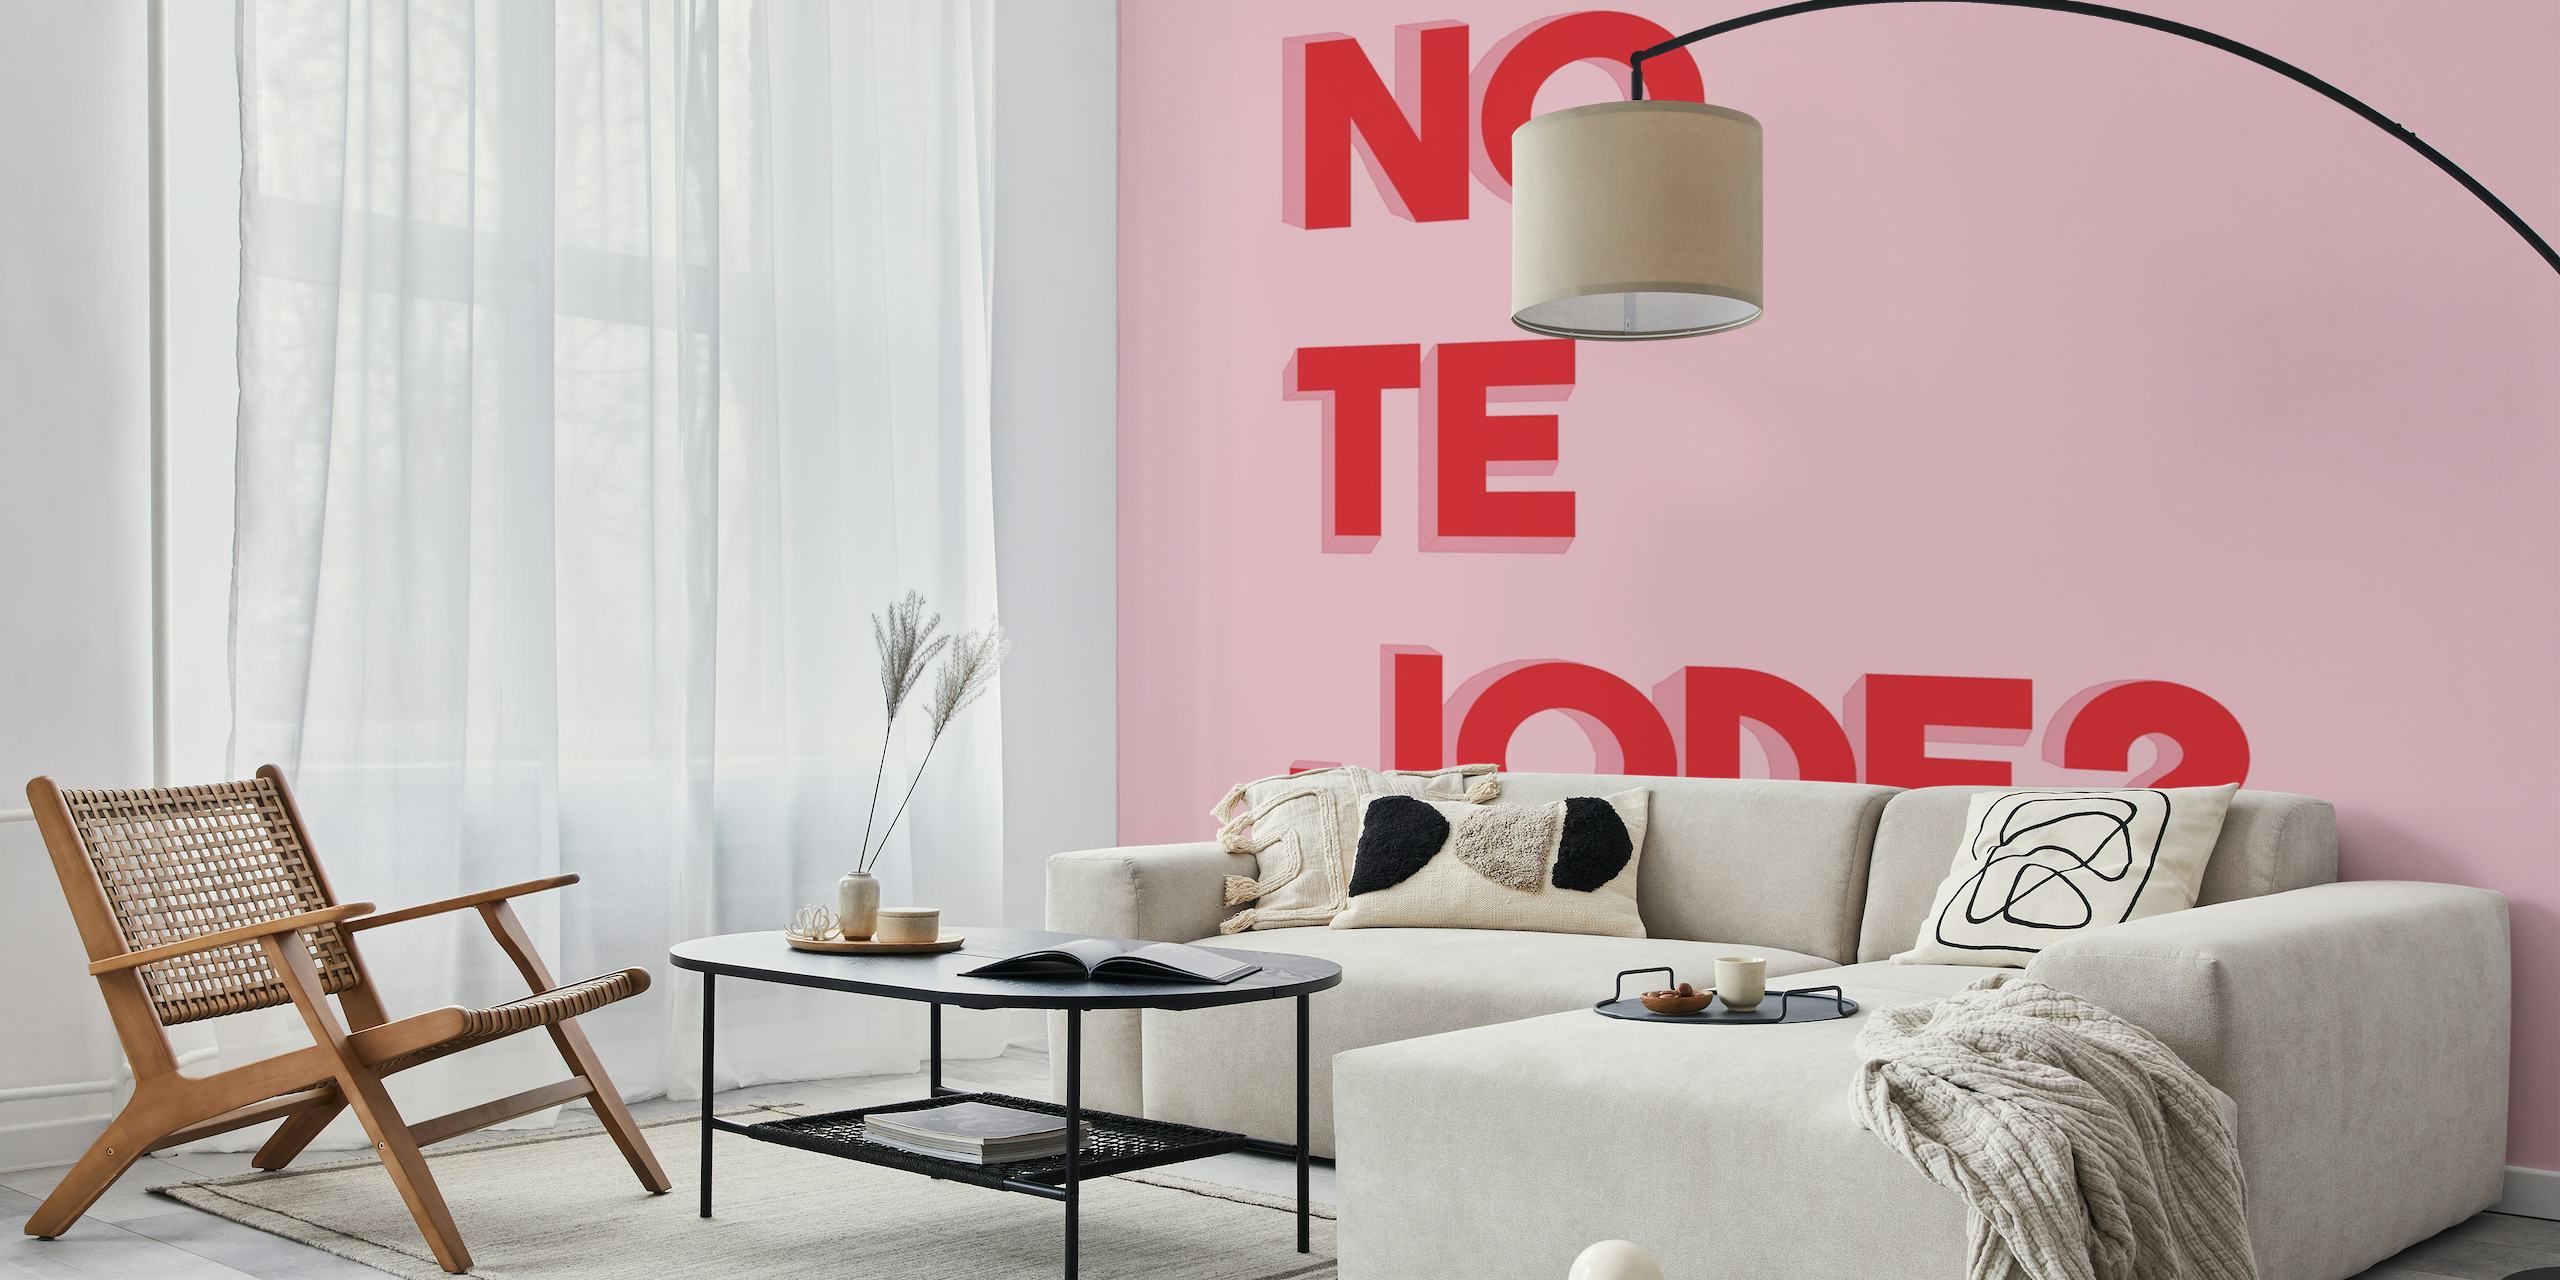 Texto em negrito em vermelho 'No te jode?' em um fotomural vinílico de parede com fundo rosa